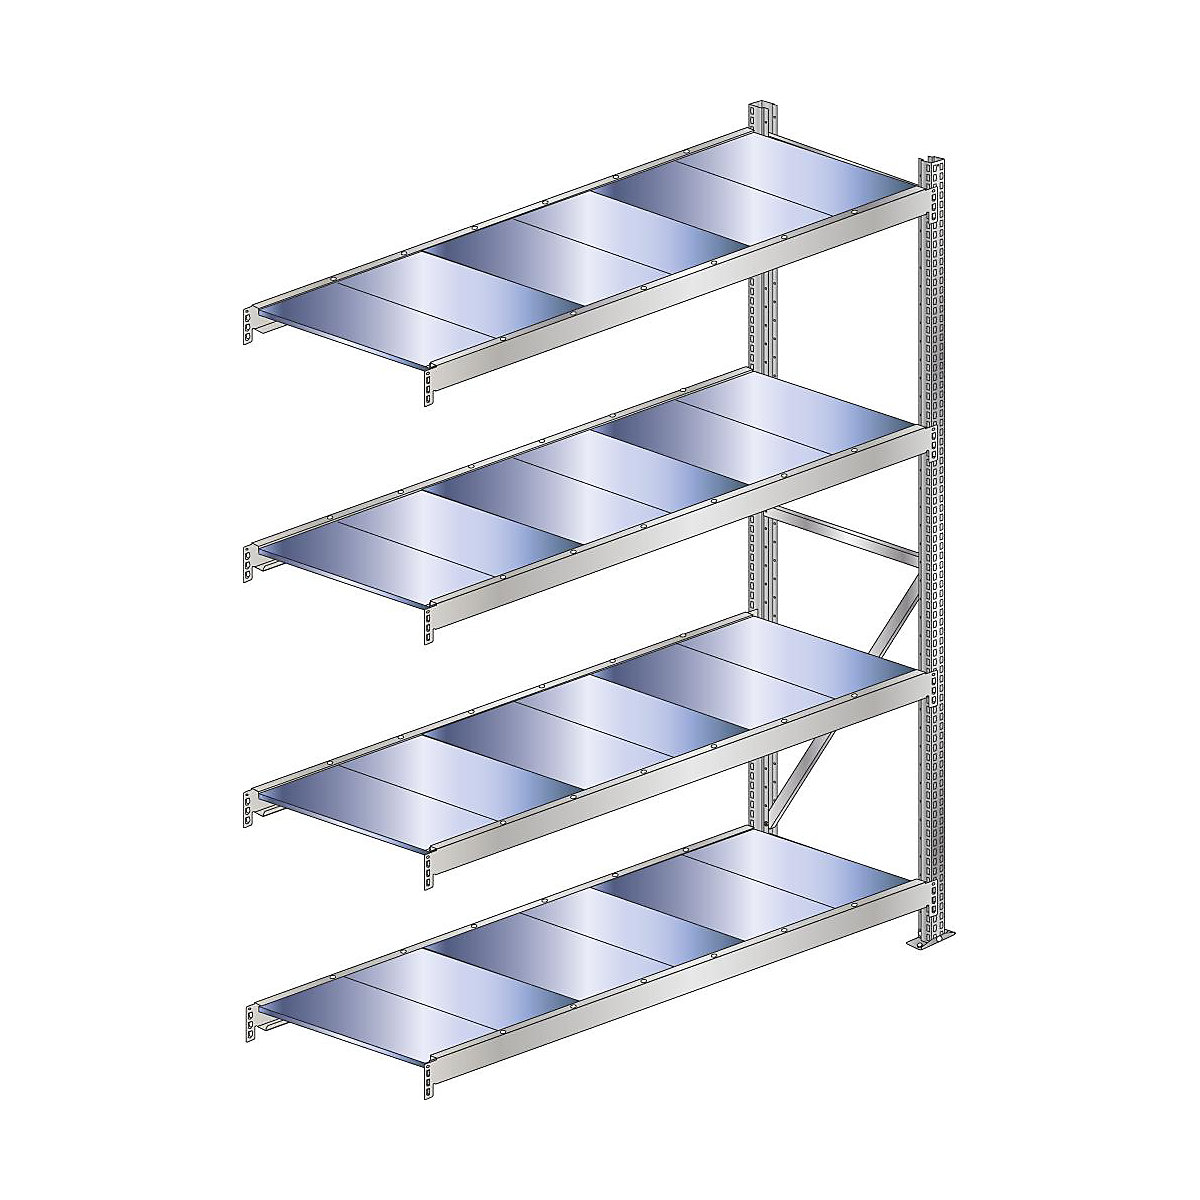 Wide span shelf unit, shelf load 500 kg – SCHULTE, shelf width 2500 mm, extension shelf unit, height 2500 mm, depth 500 mm